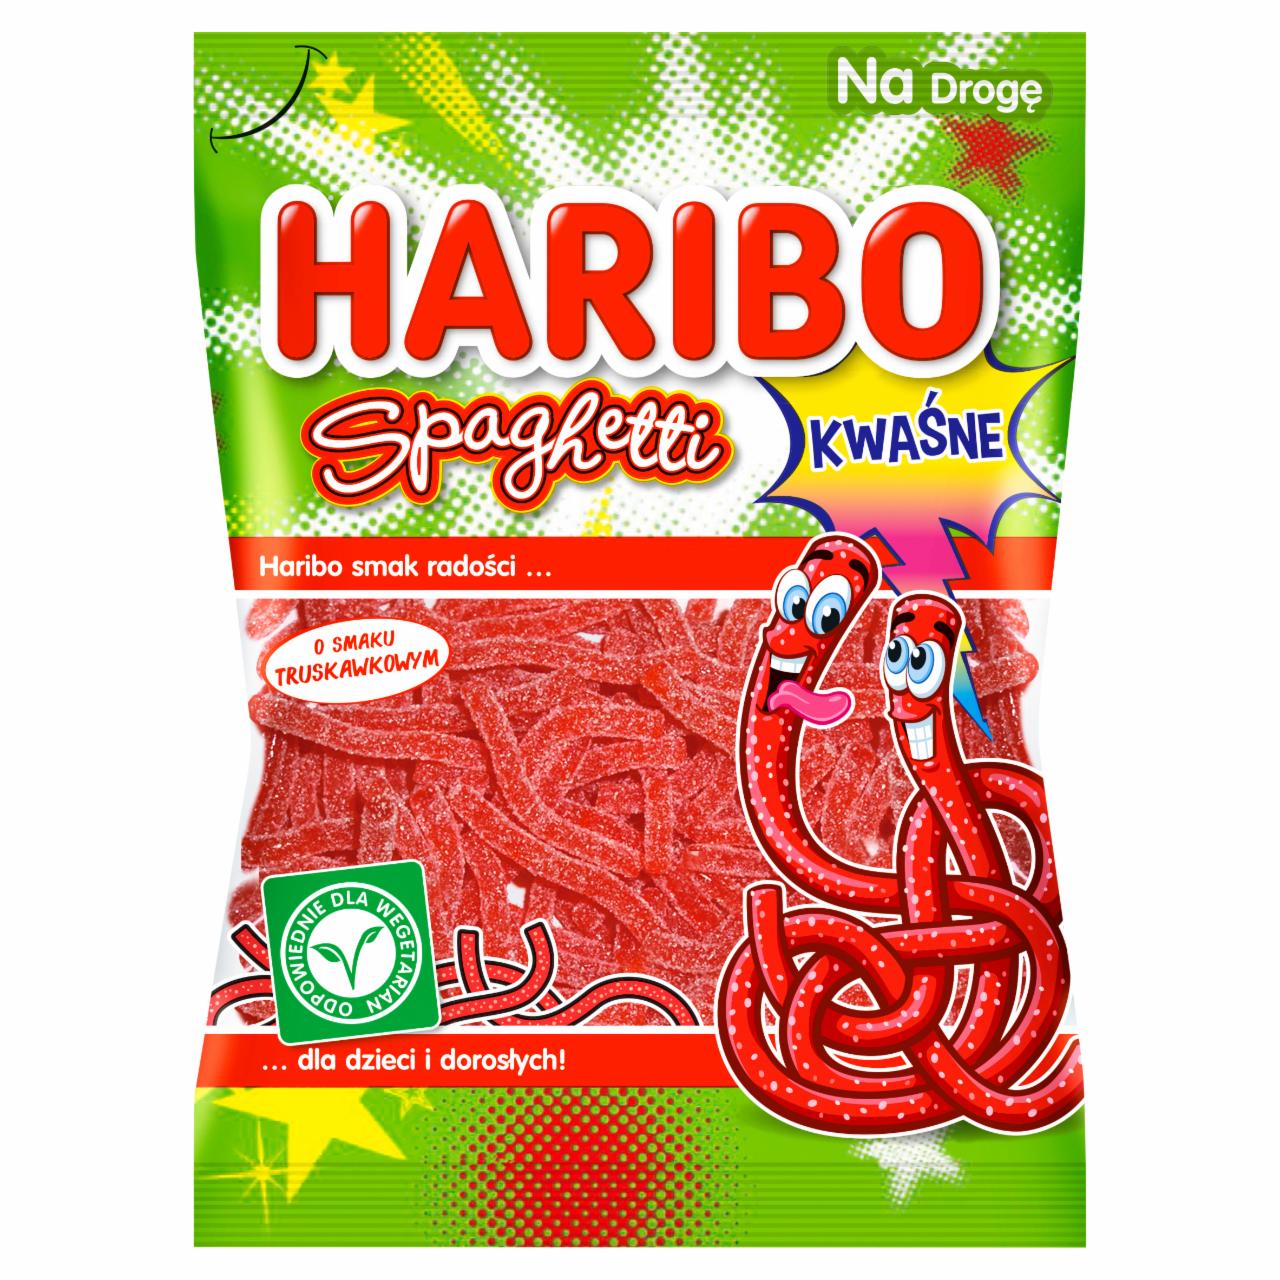 Zdjęcia - Haribo Spaghetti Żelki owocowe o smaku truskawkowym 75 g